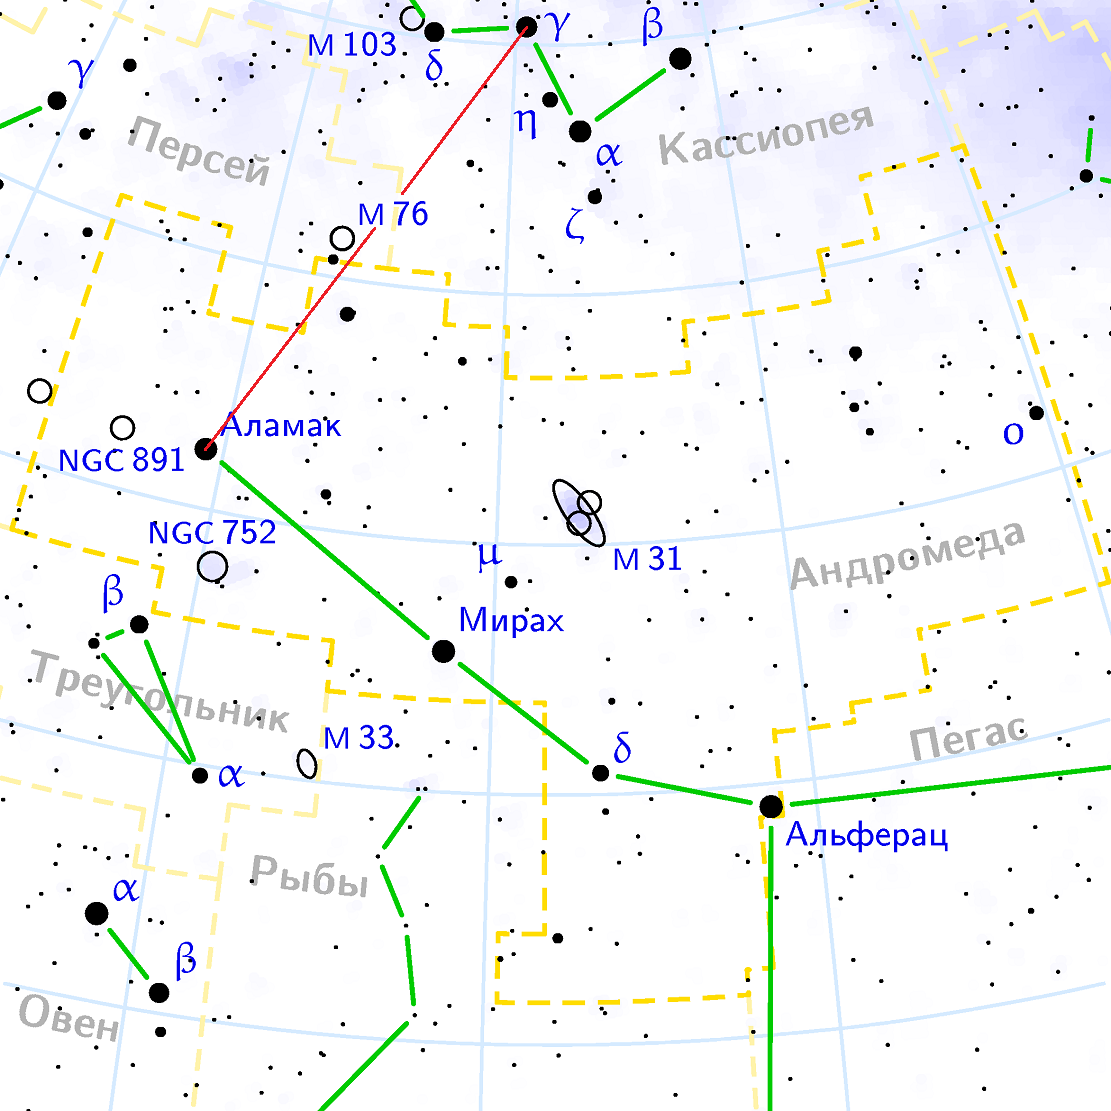 Position de la nébuleuse M76 par rapport aux constellations Persky, Cassiopée et Andromède